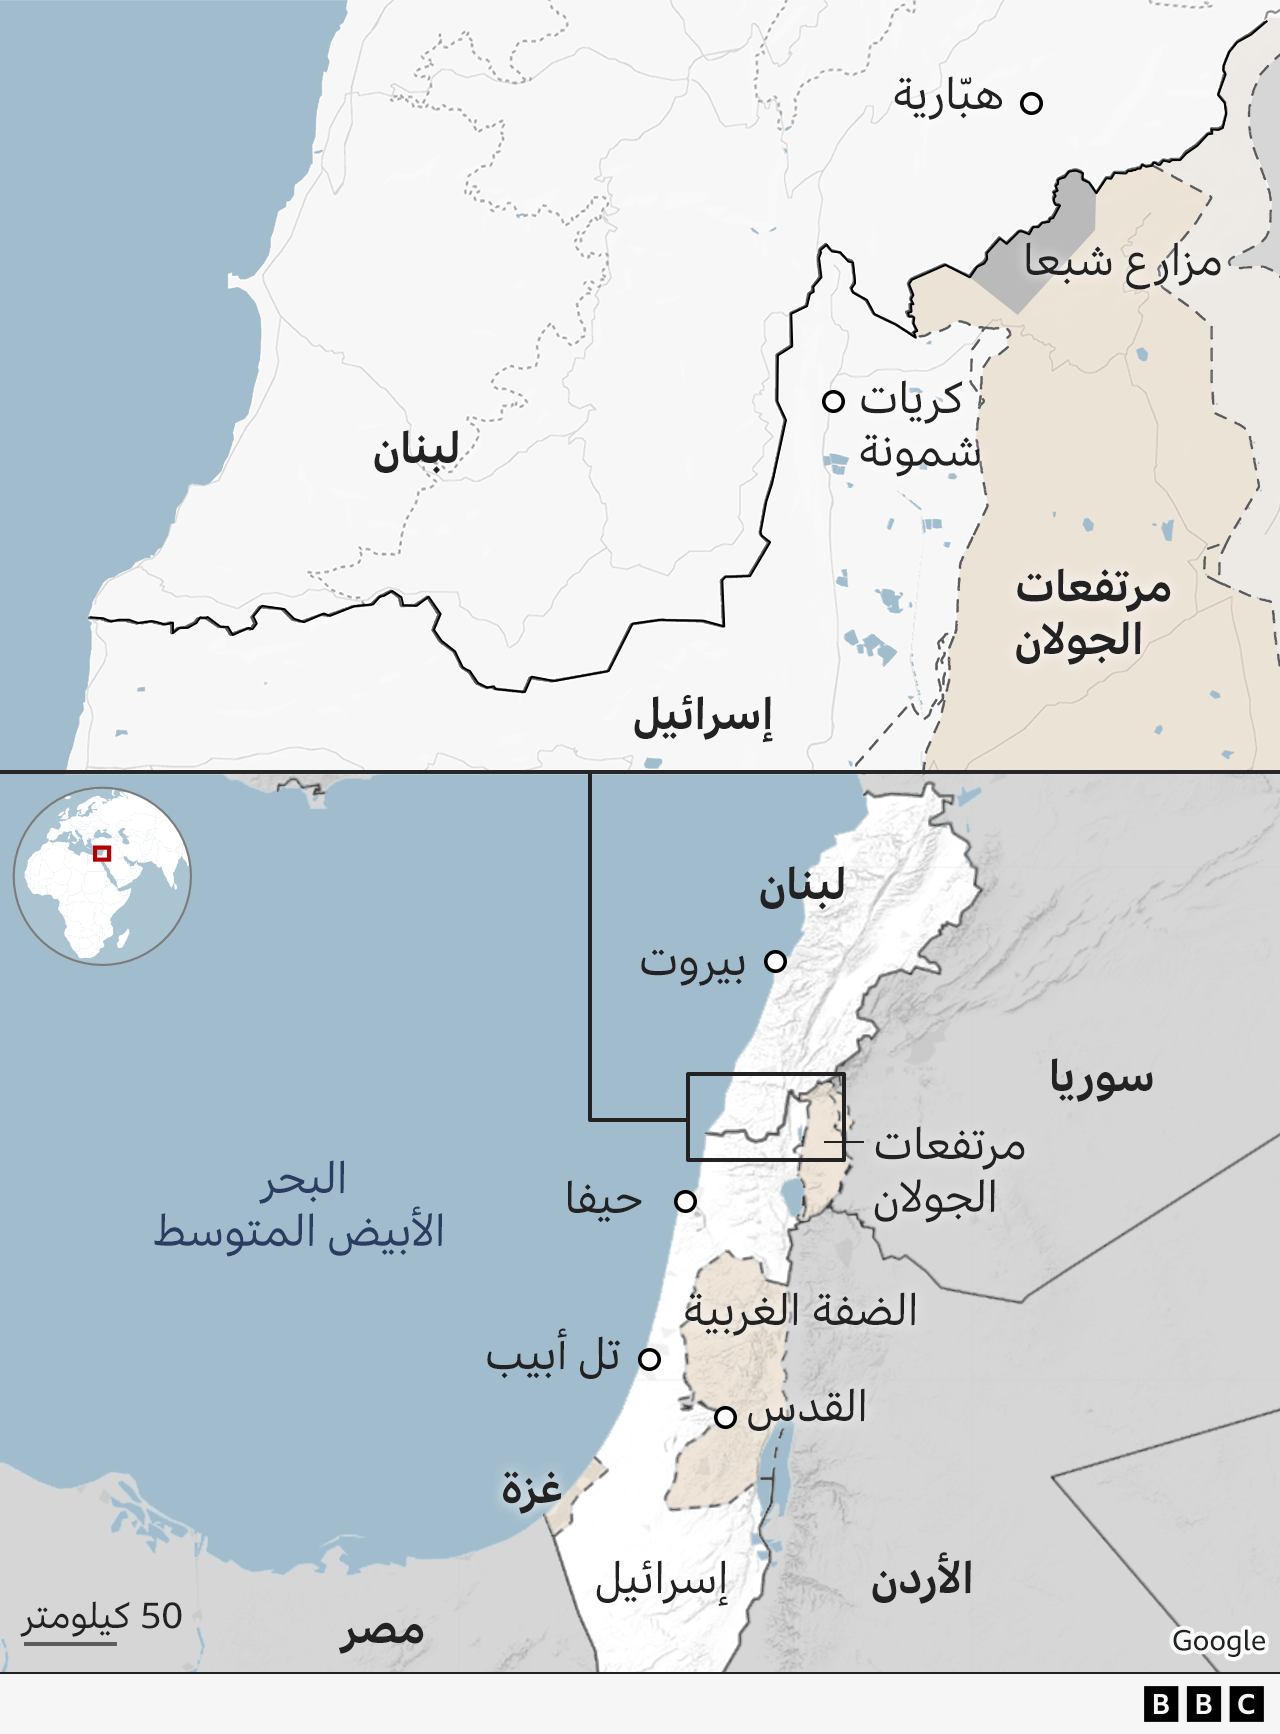 خريطة لبنان وإسرائيل